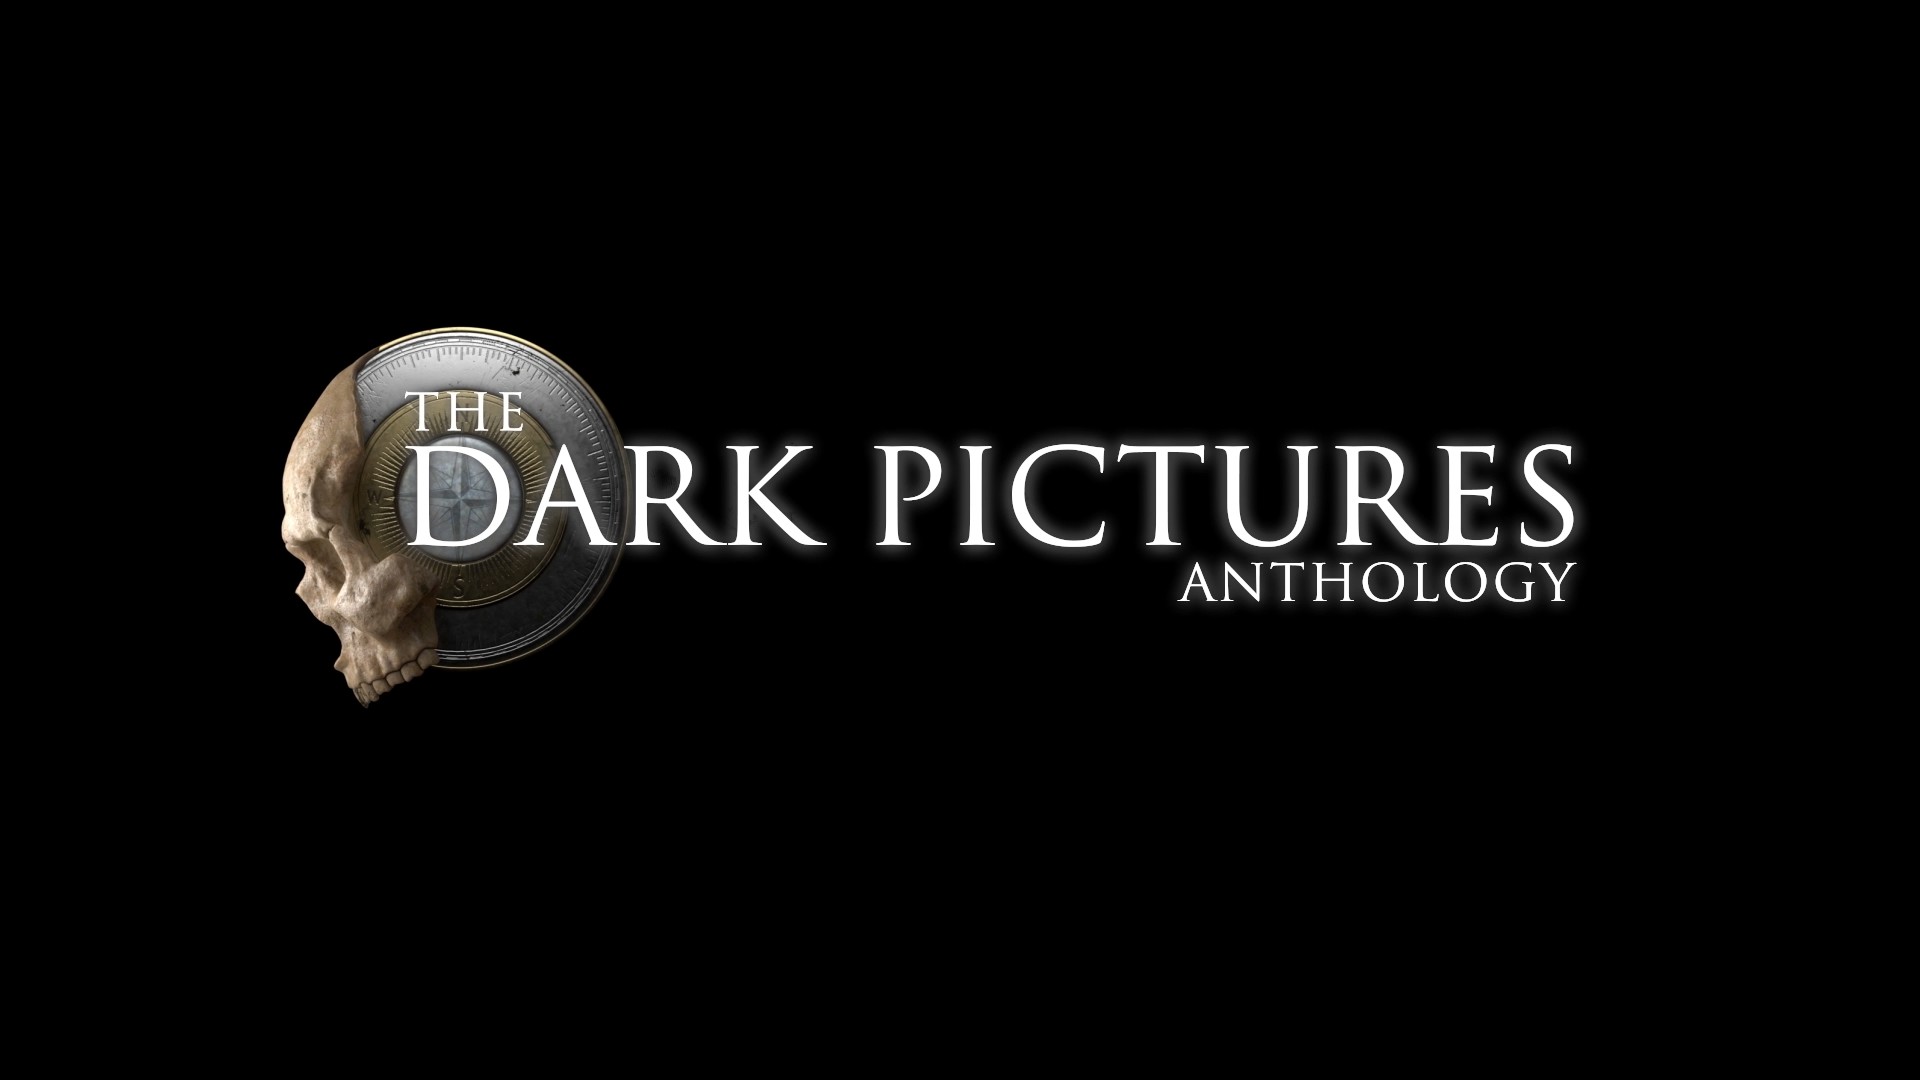 เกมต่อไปของซีรีส์ The Dark Pictures Anthology จะมีชื่อว่า The Devil In Me